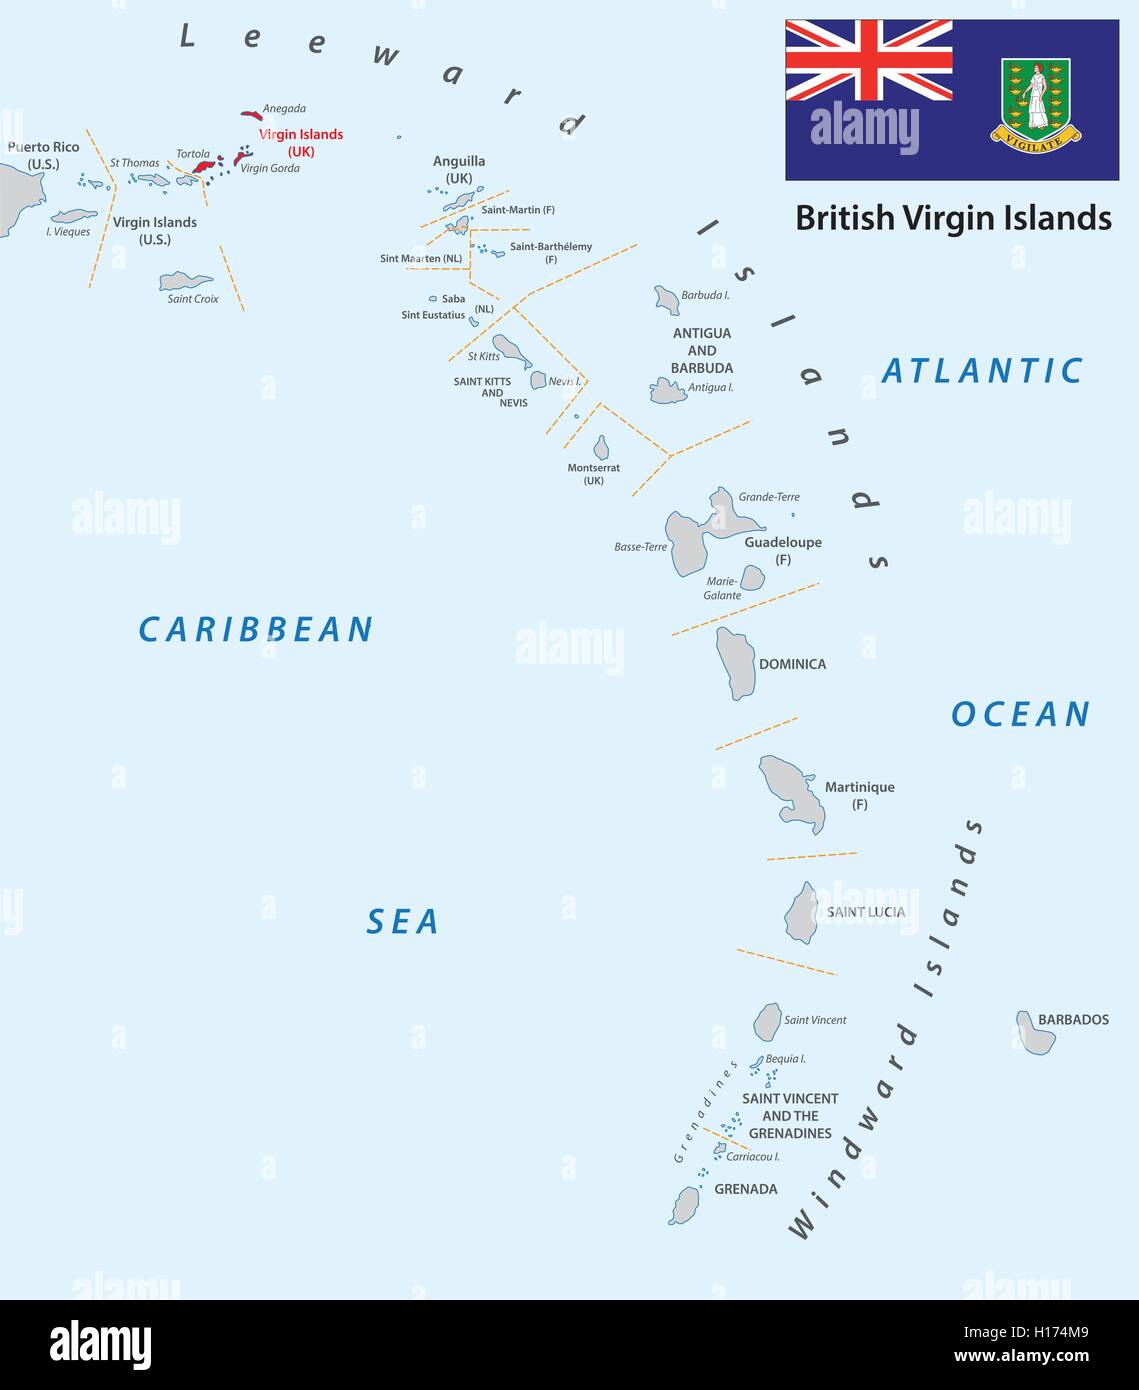 Petites Antilles carte à grandes lignes aux Iles vierges britanniques Illustration de Vecteur